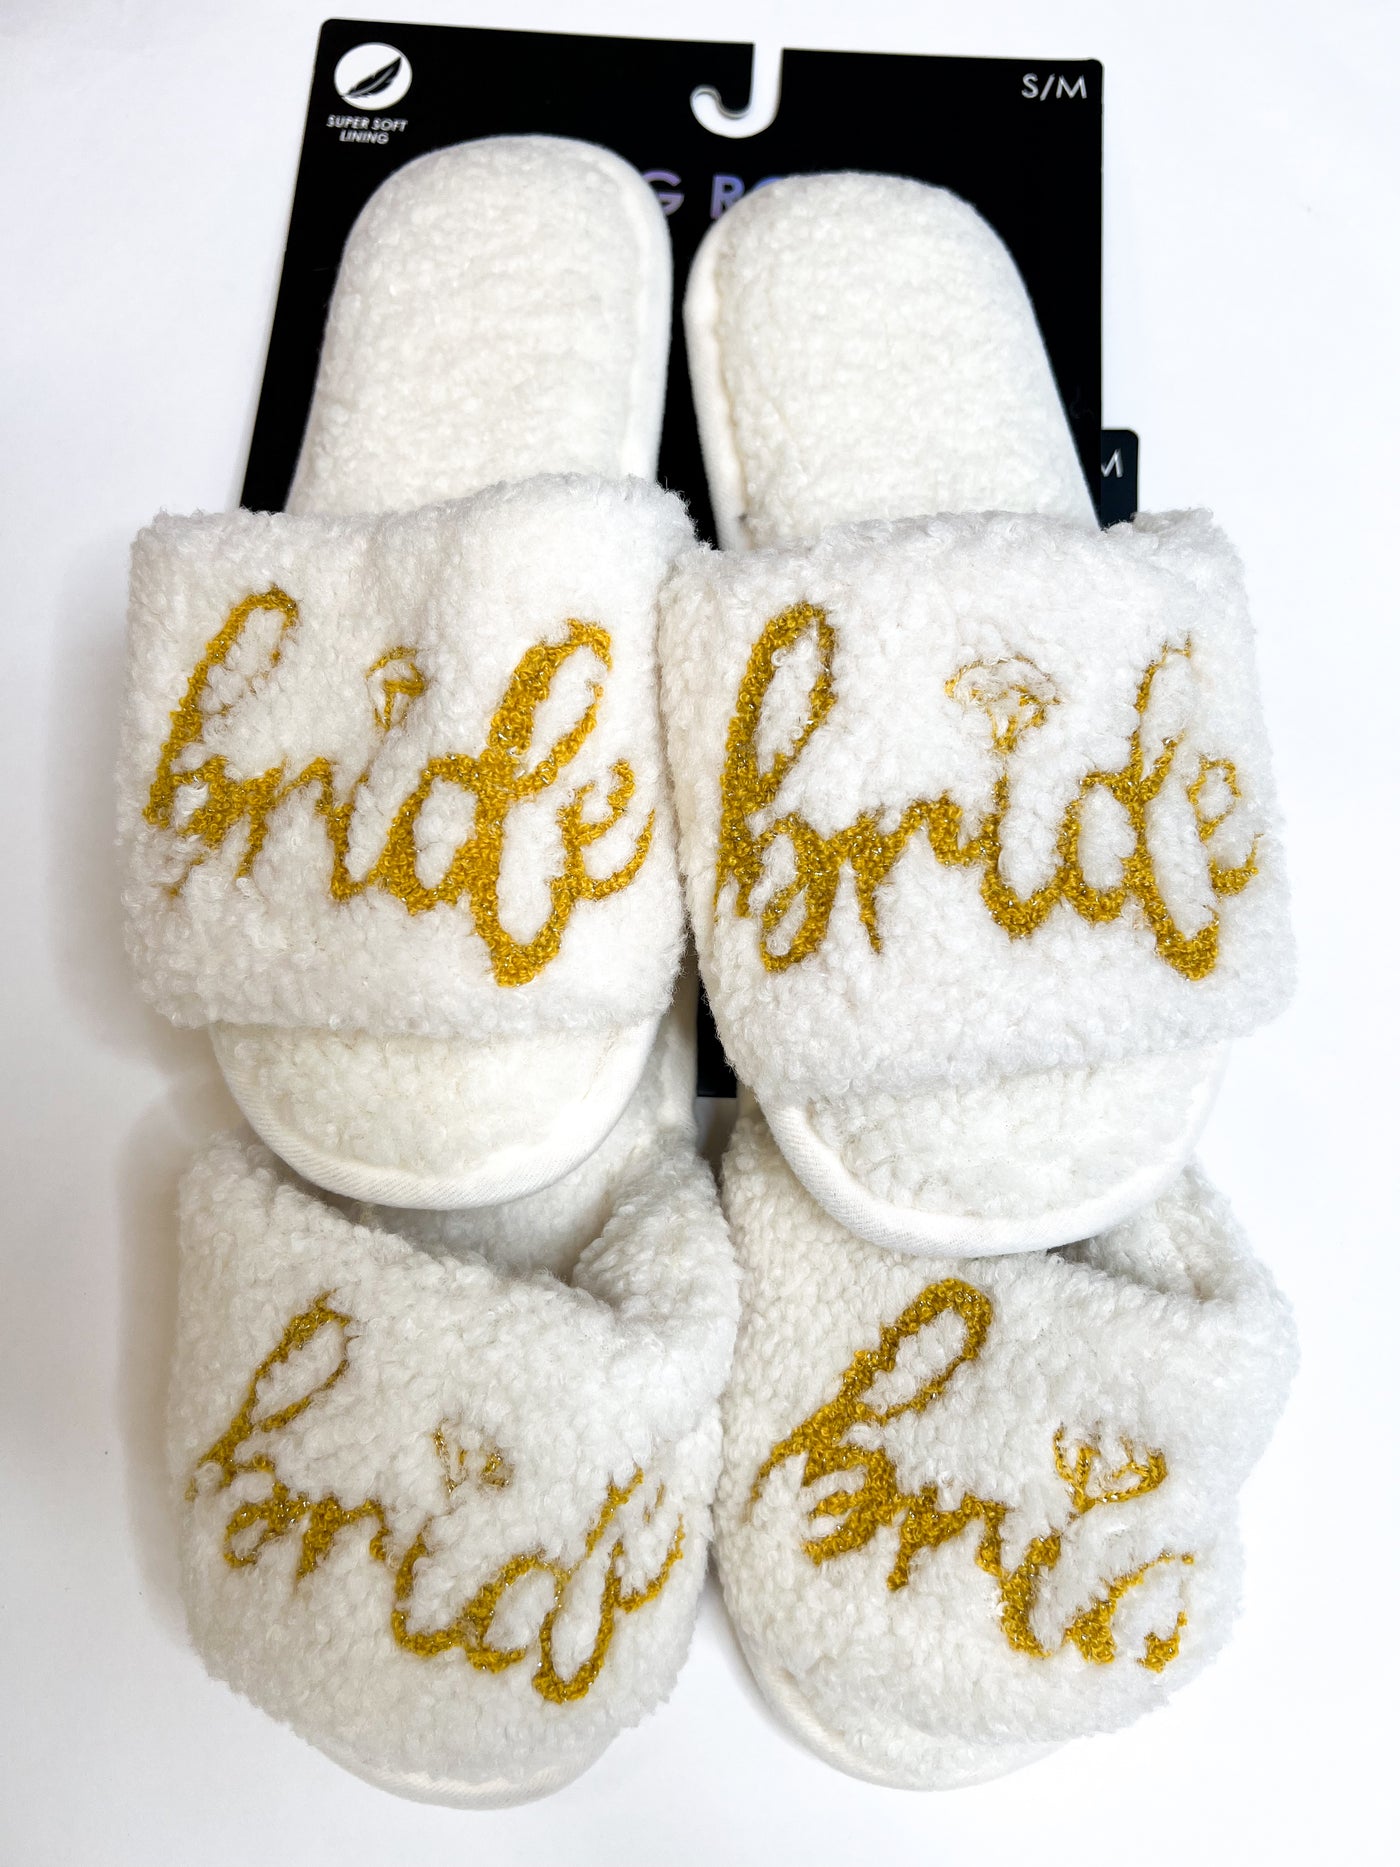 Bride Slide Slippers